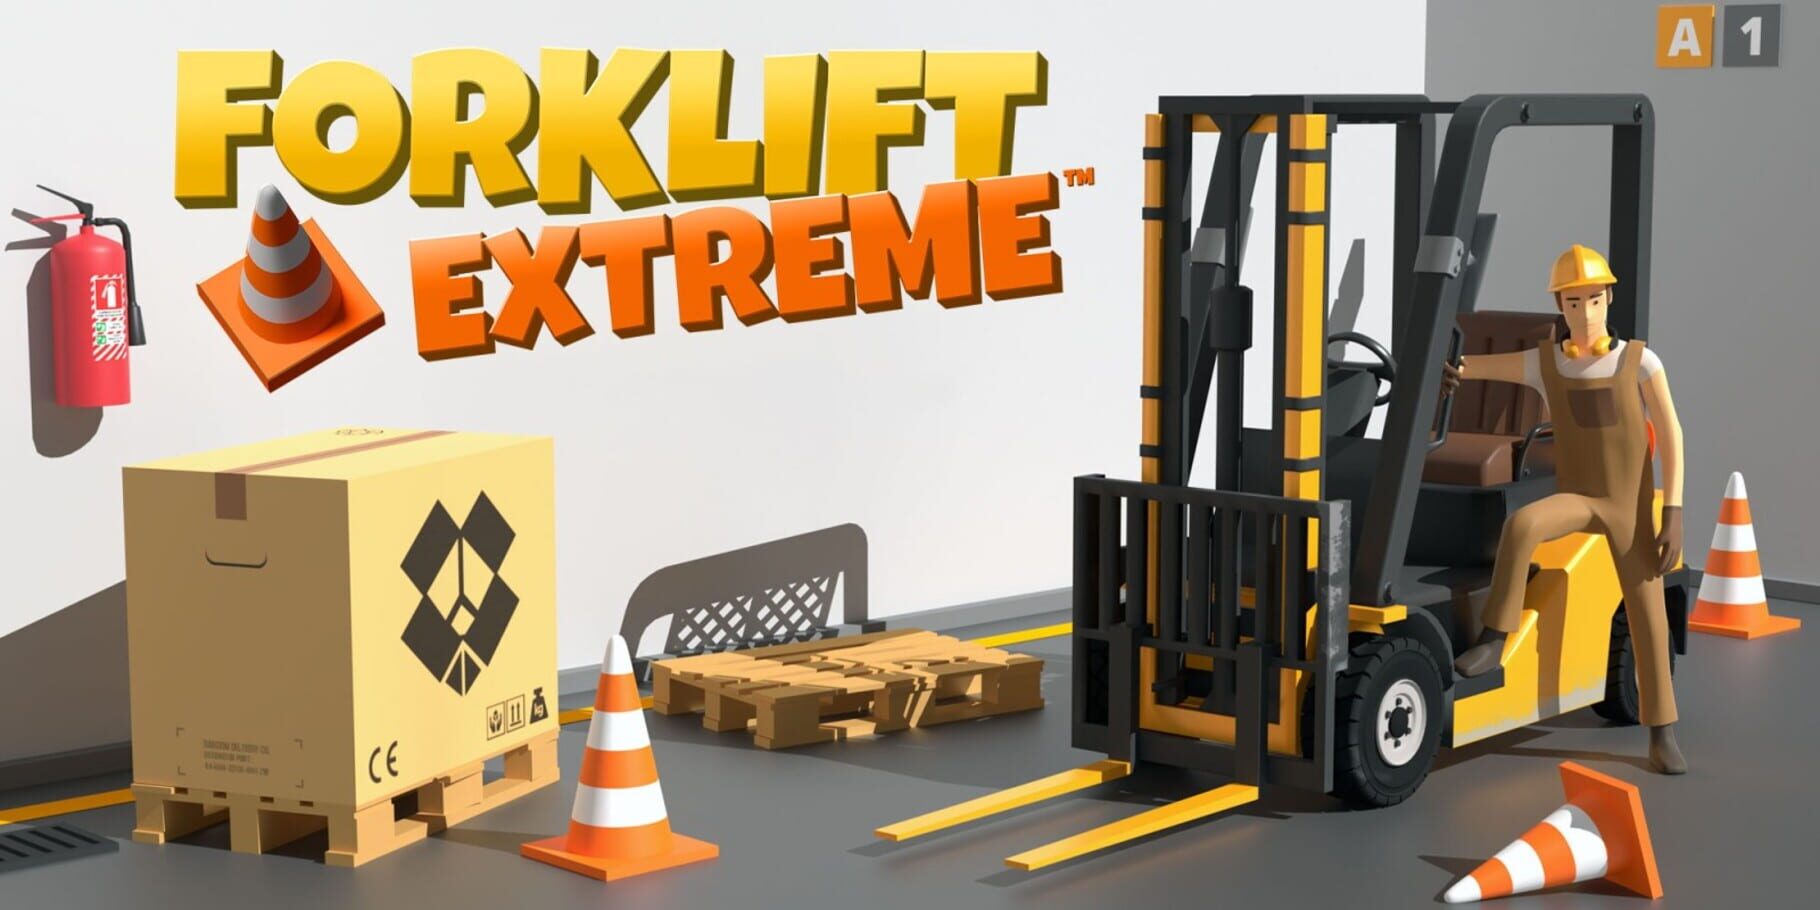 Forklift Extreme artwork